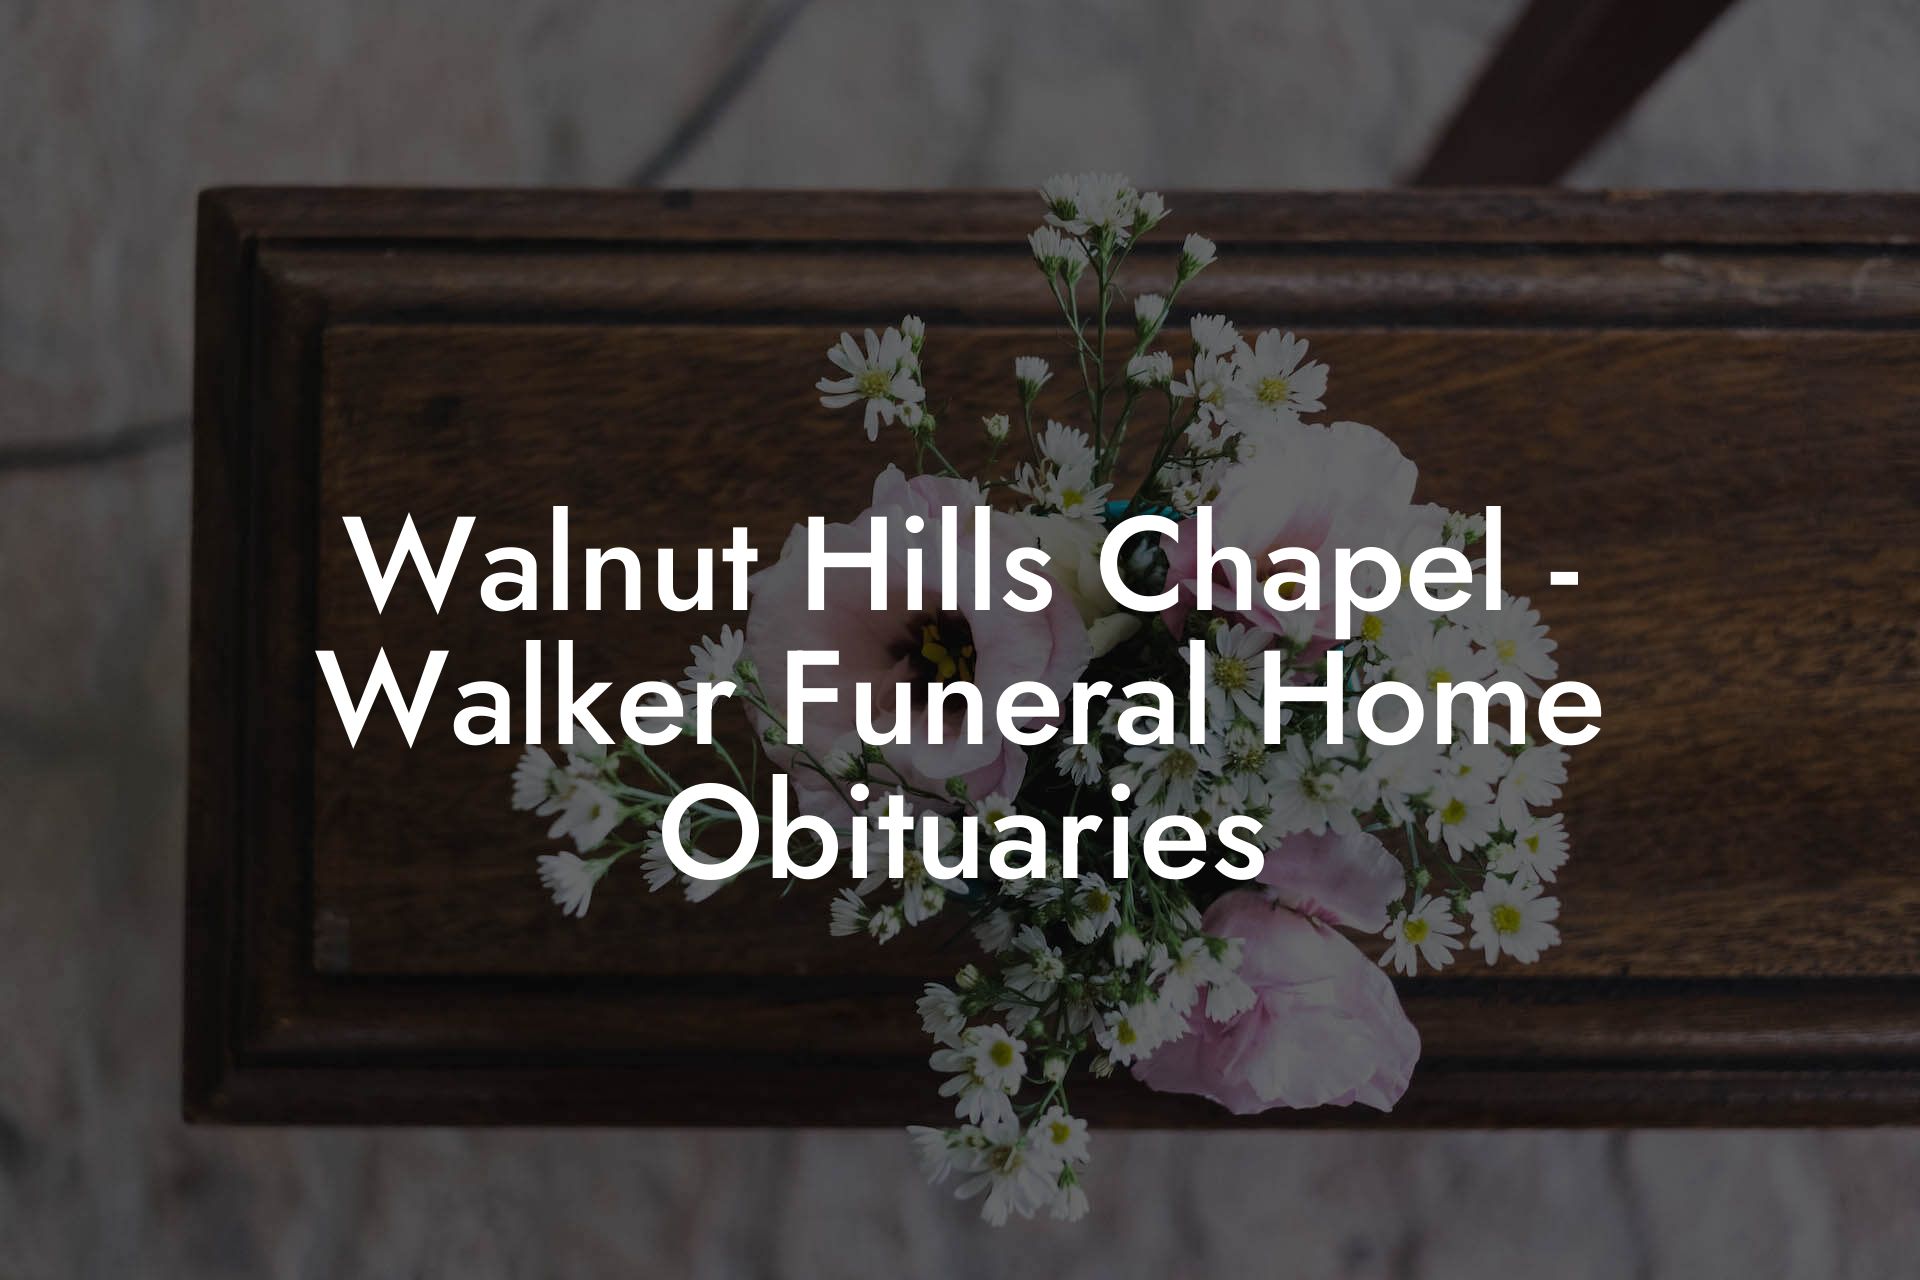 Walnut Hills Chapel - Walker Funeral Home Obituaries